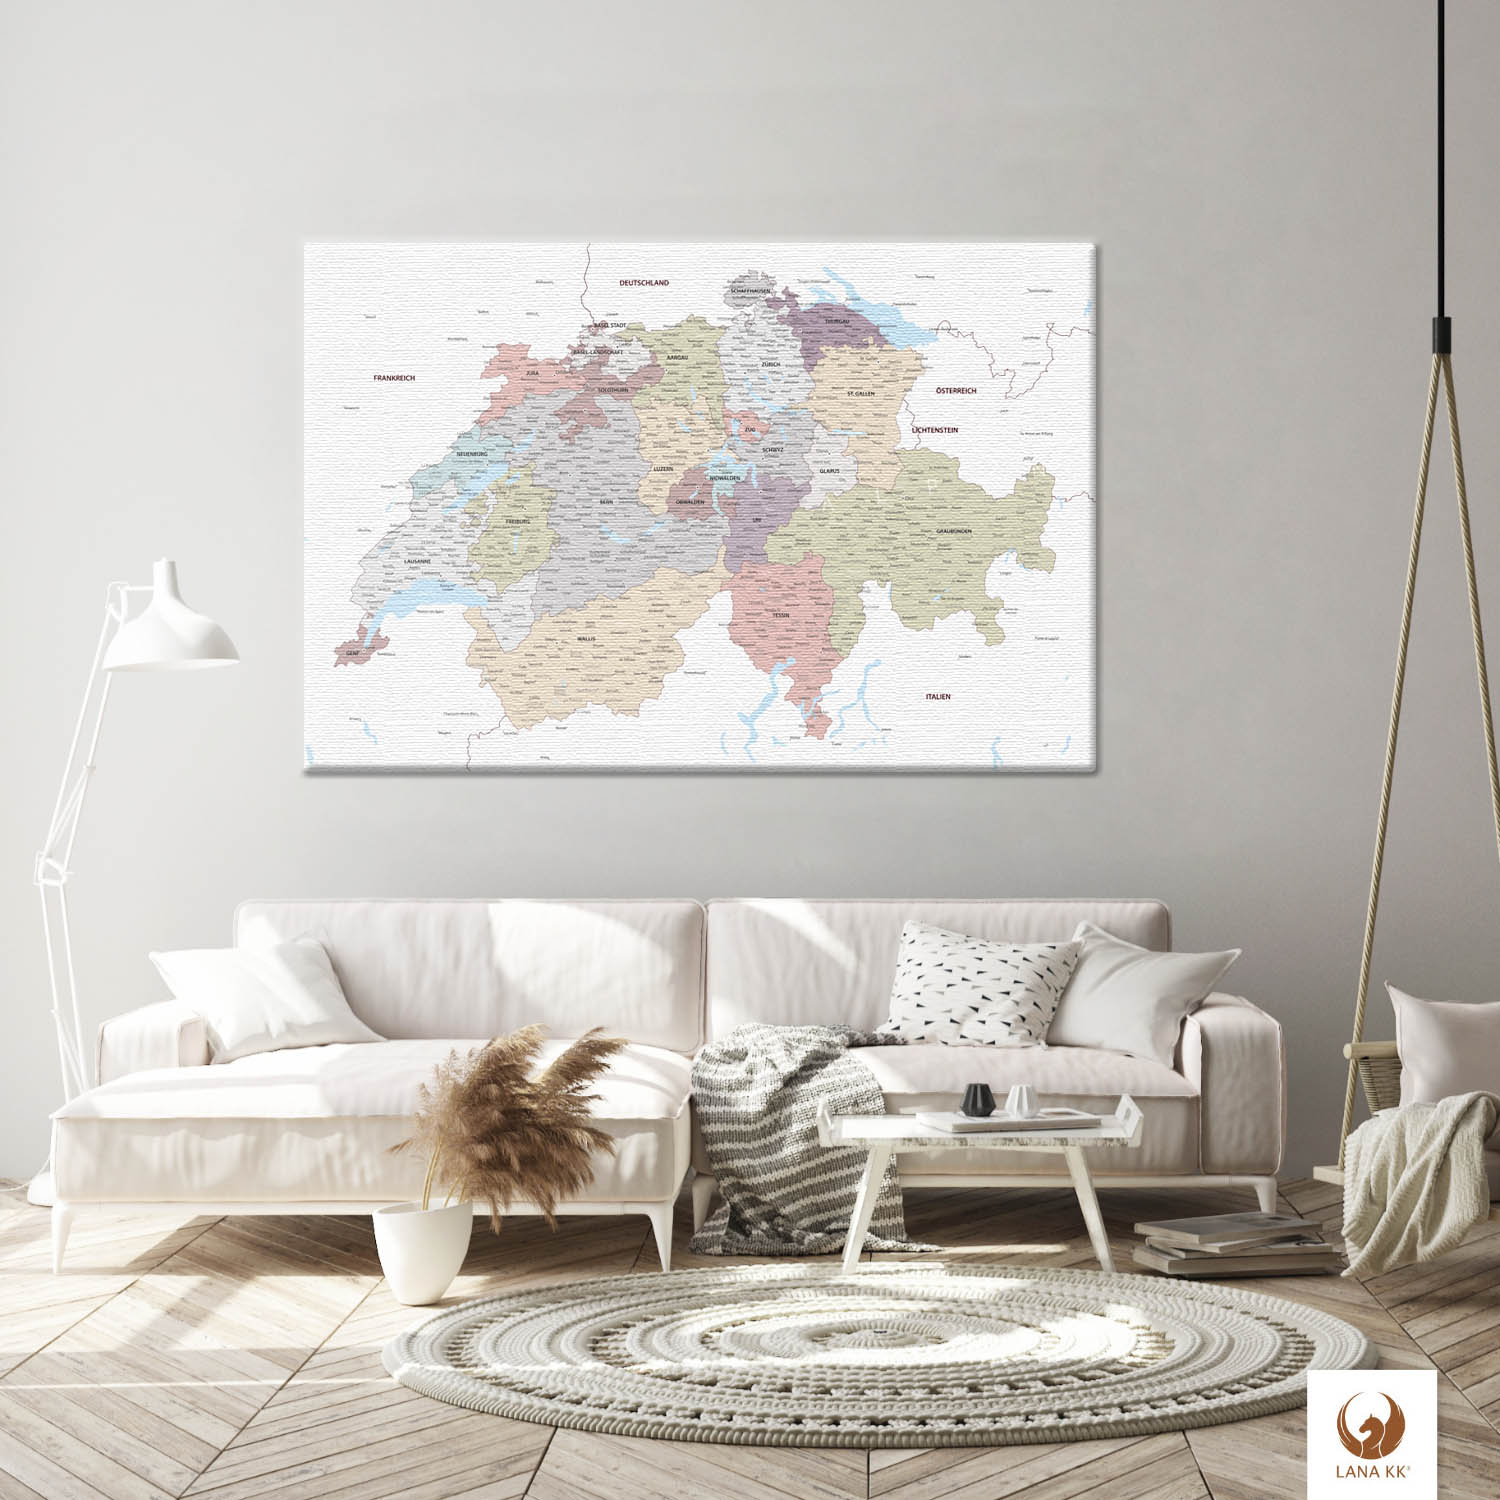 Die Welt als Zentrum Deiner Wohnung. Deine Schweizkarte Weiß für sich mit ihren ausgewogenen Farben ideal in Dein Wohnkonzept ein.